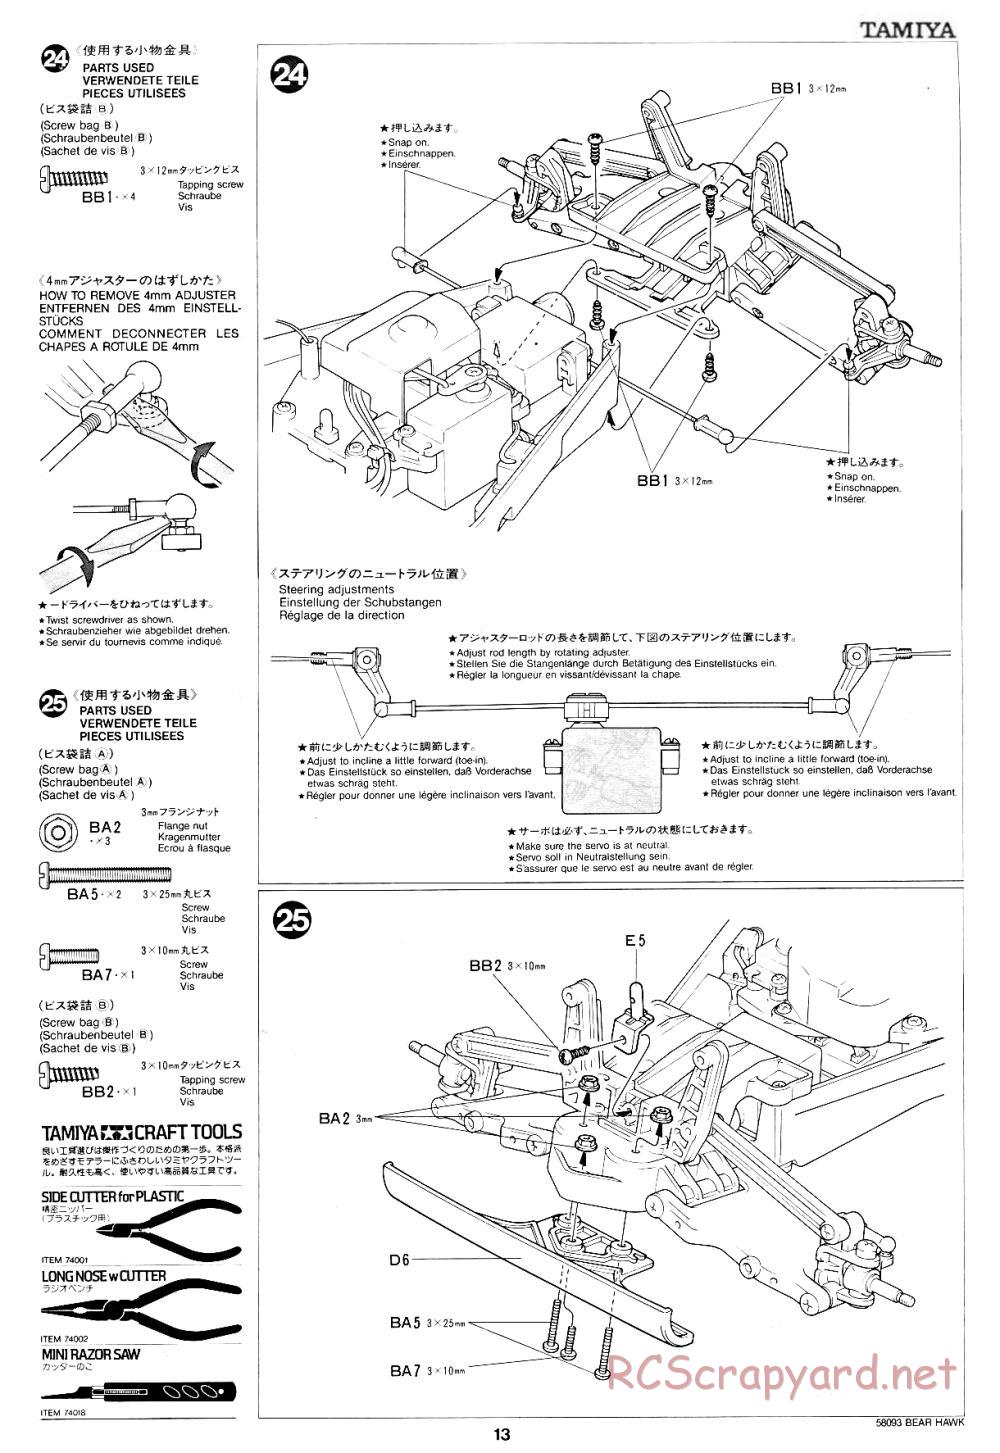 Tamiya - Bear Hawk - 58093 - Manual - Page 13